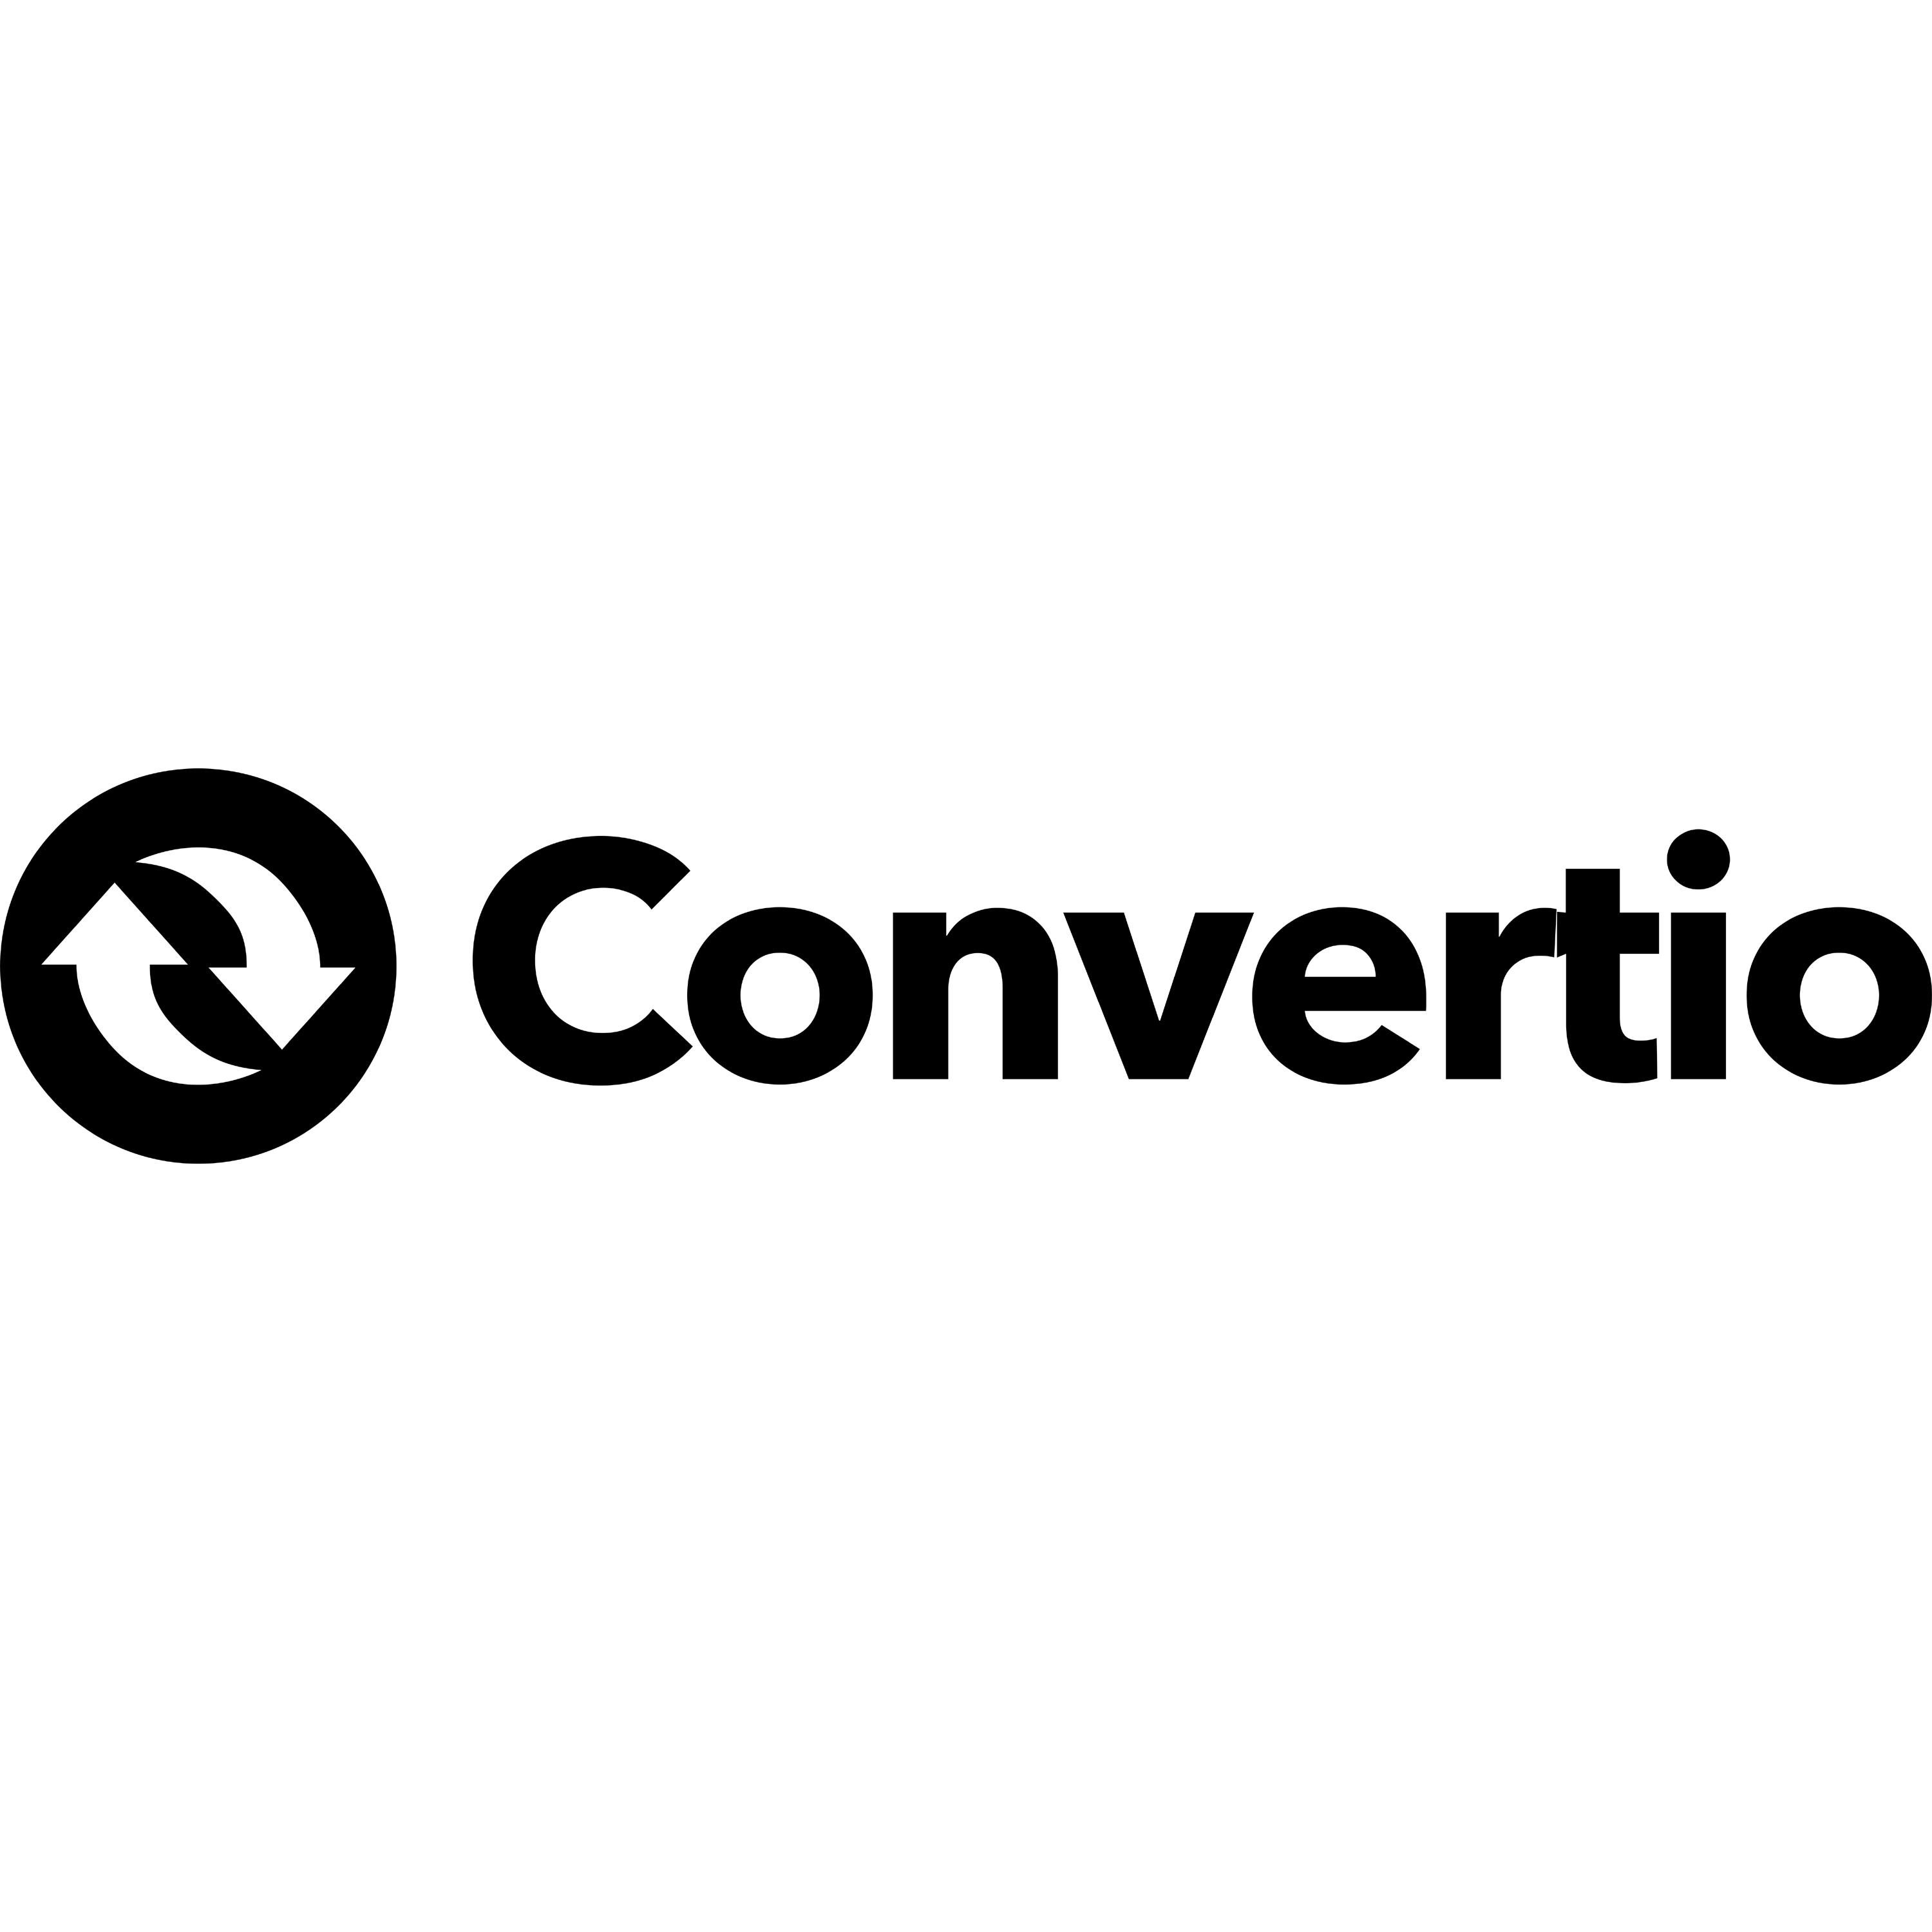 Convertio Logo Transparent Picture